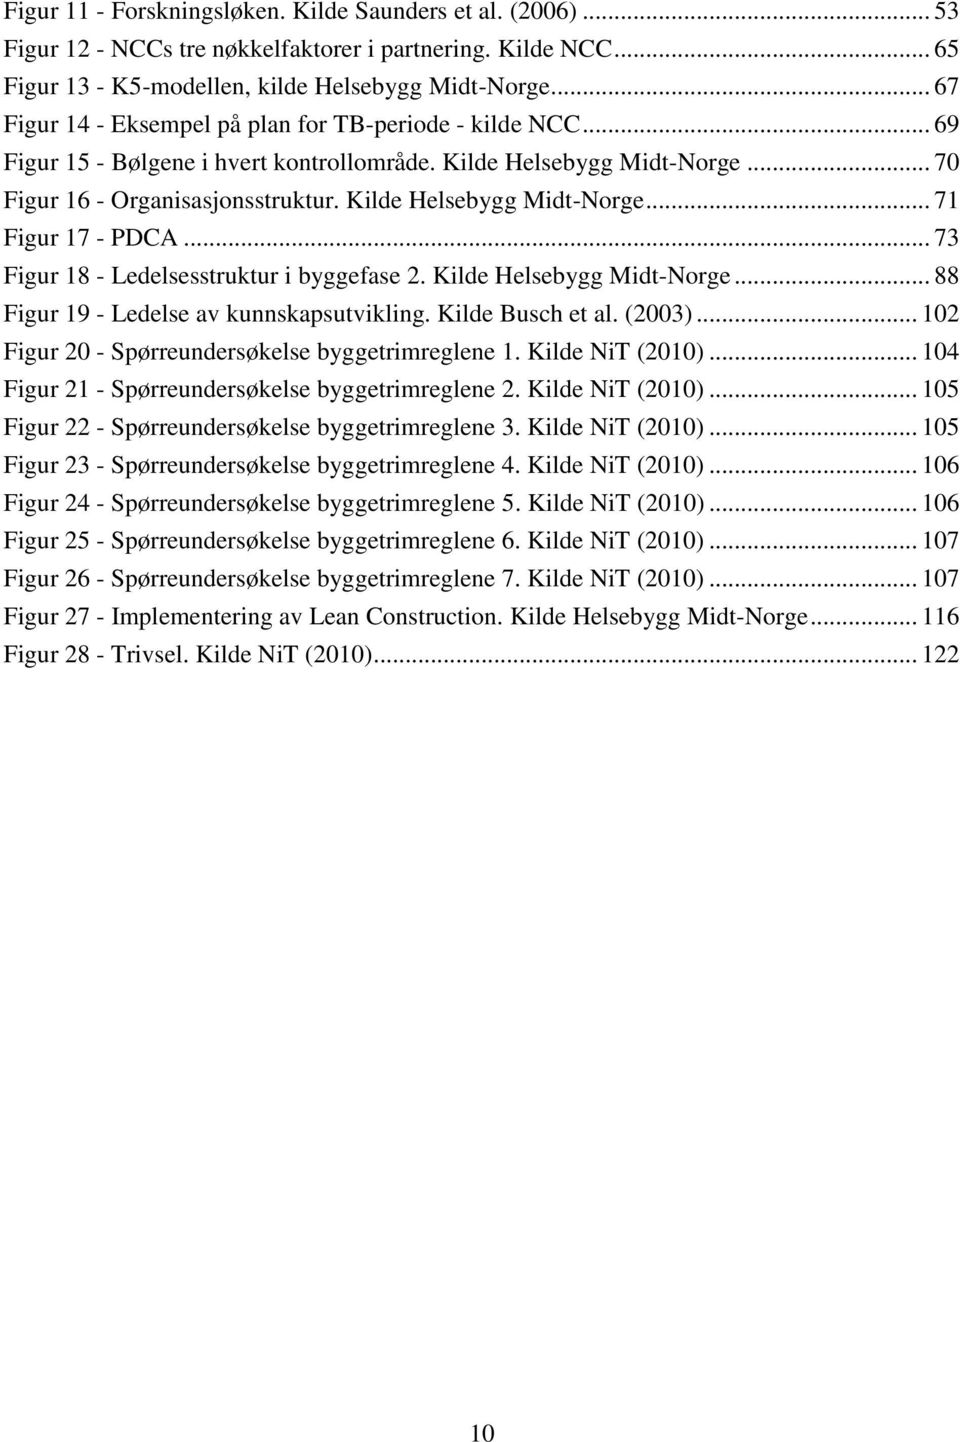 Kilde Helsebygg Midt-Norge... 71 Figur 17 - PDCA... 73 Figur 18 - Ledelsesstruktur i byggefase 2. Kilde Helsebygg Midt-Norge... 88 Figur 19 - Ledelse av kunnskapsutvikling. Kilde Busch et al. (2003).